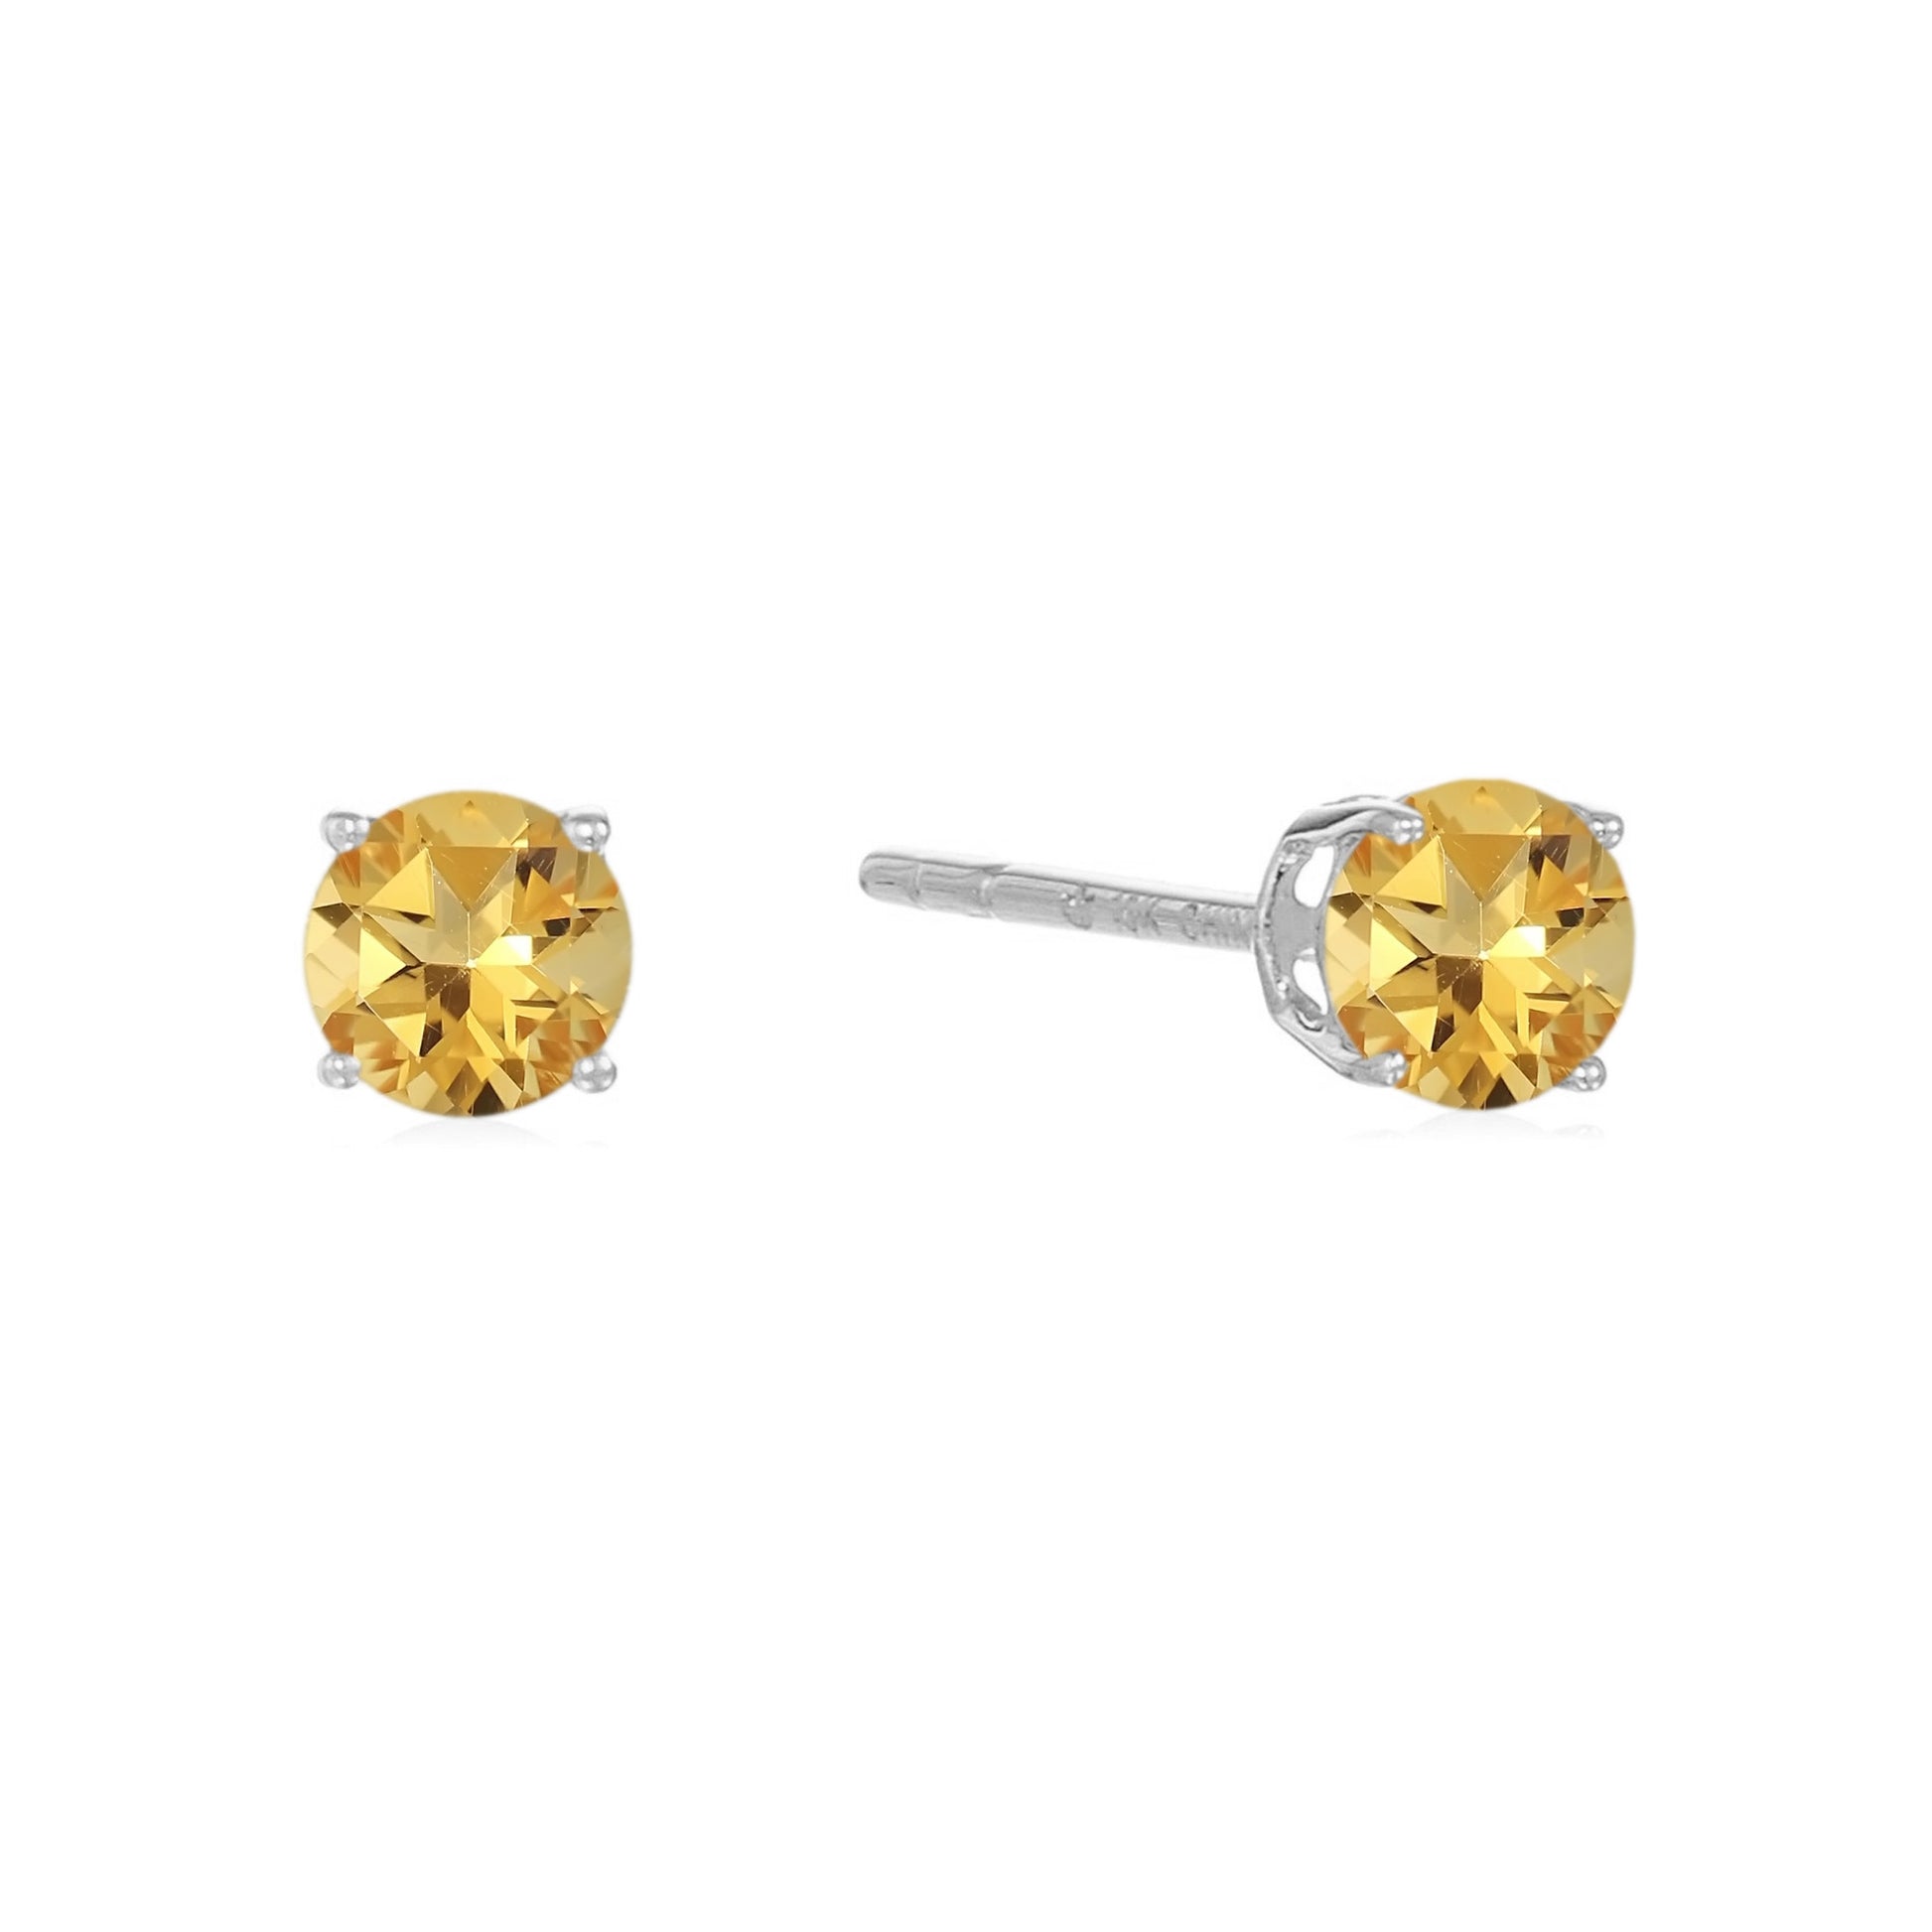 Sterling Silver Round Gemstone Birthstone Stud Earrings-Citrine